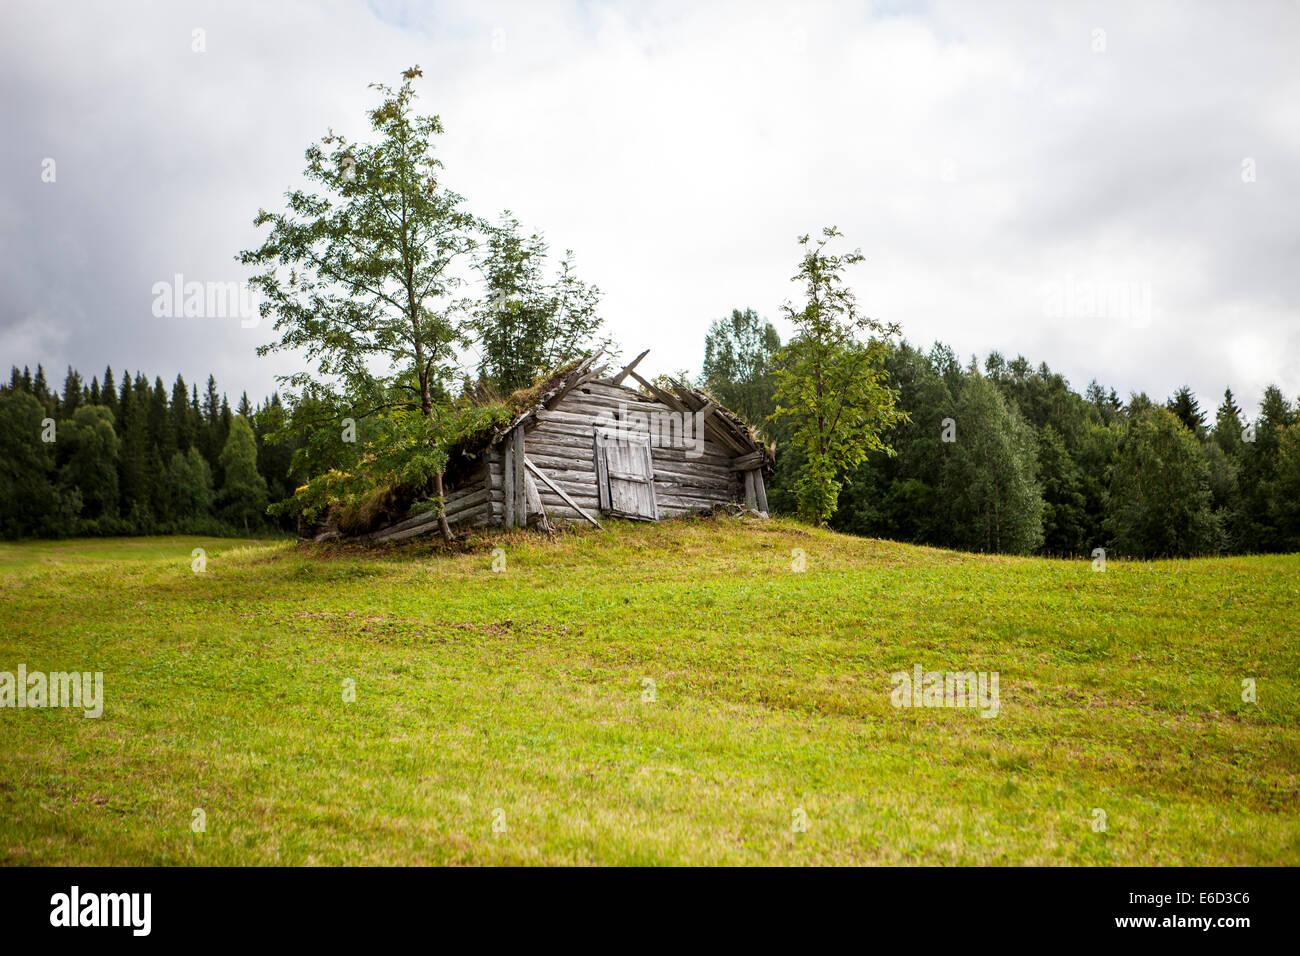 Wirklich alte Holzschuppen in Lappland, Schweden. Rasen wächst auf dem Dach. Die Schuppen fällt auseinander und langsam gehen wir zurück zu natu Stockfoto